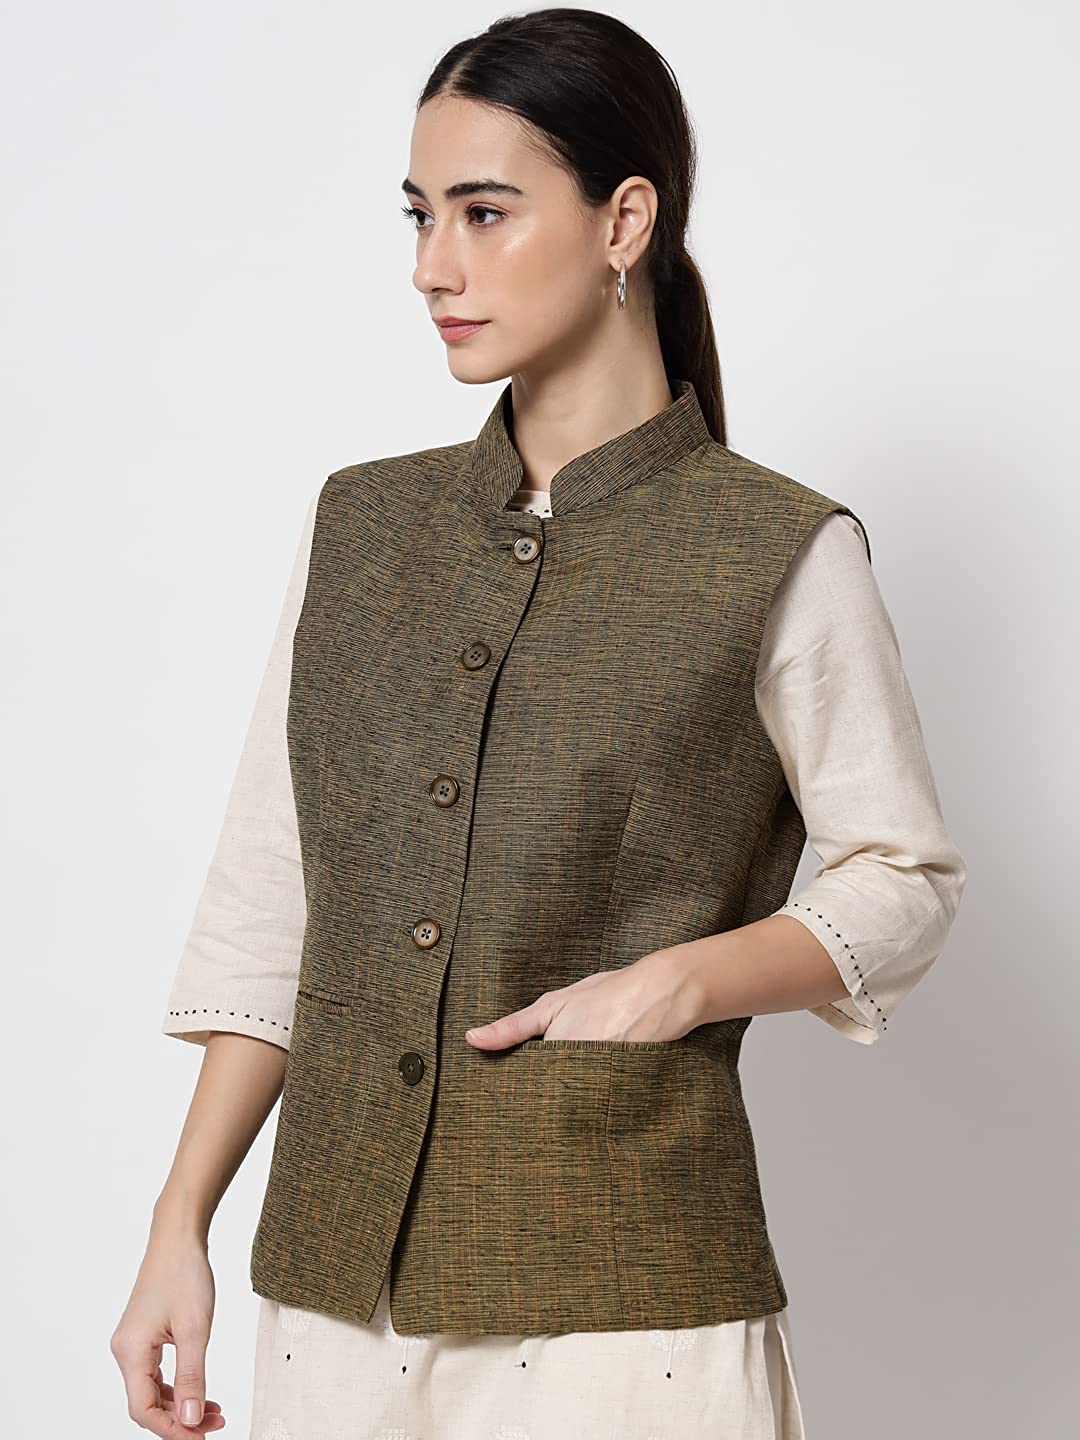 Latest Fashion Trends 2015 - Men's Nehru Jacket